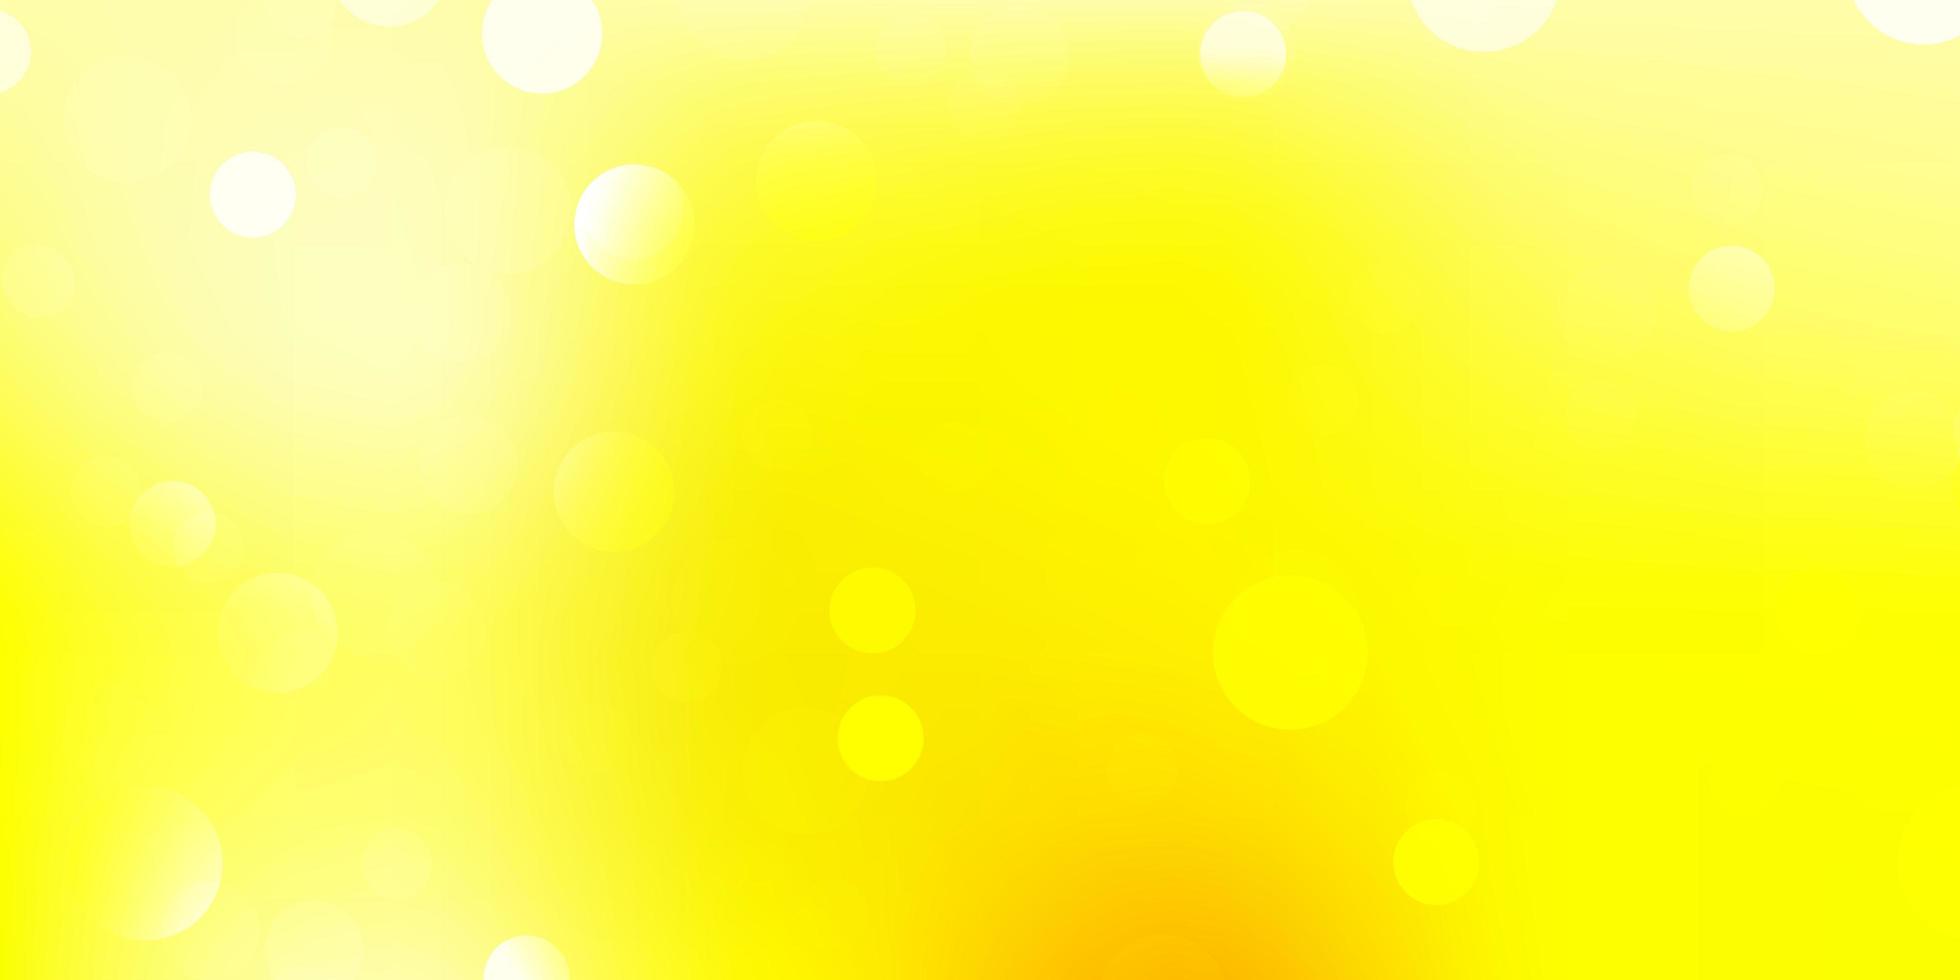 sfondo vettoriale giallo chiaro con forme caotiche.